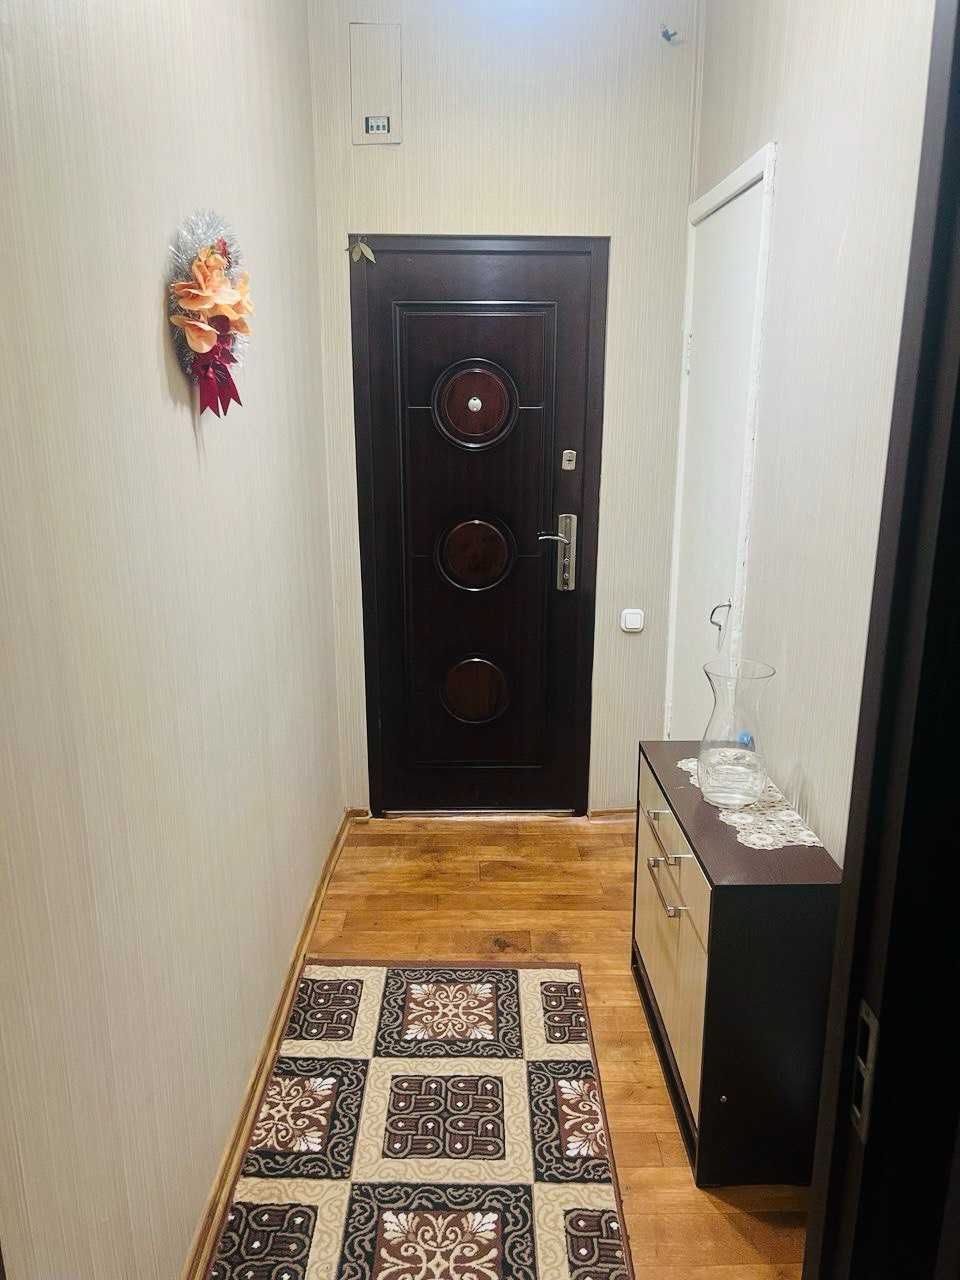 Продается 2в3 квартира в Мирзоулугбекском районе ор-р метро БИЙ